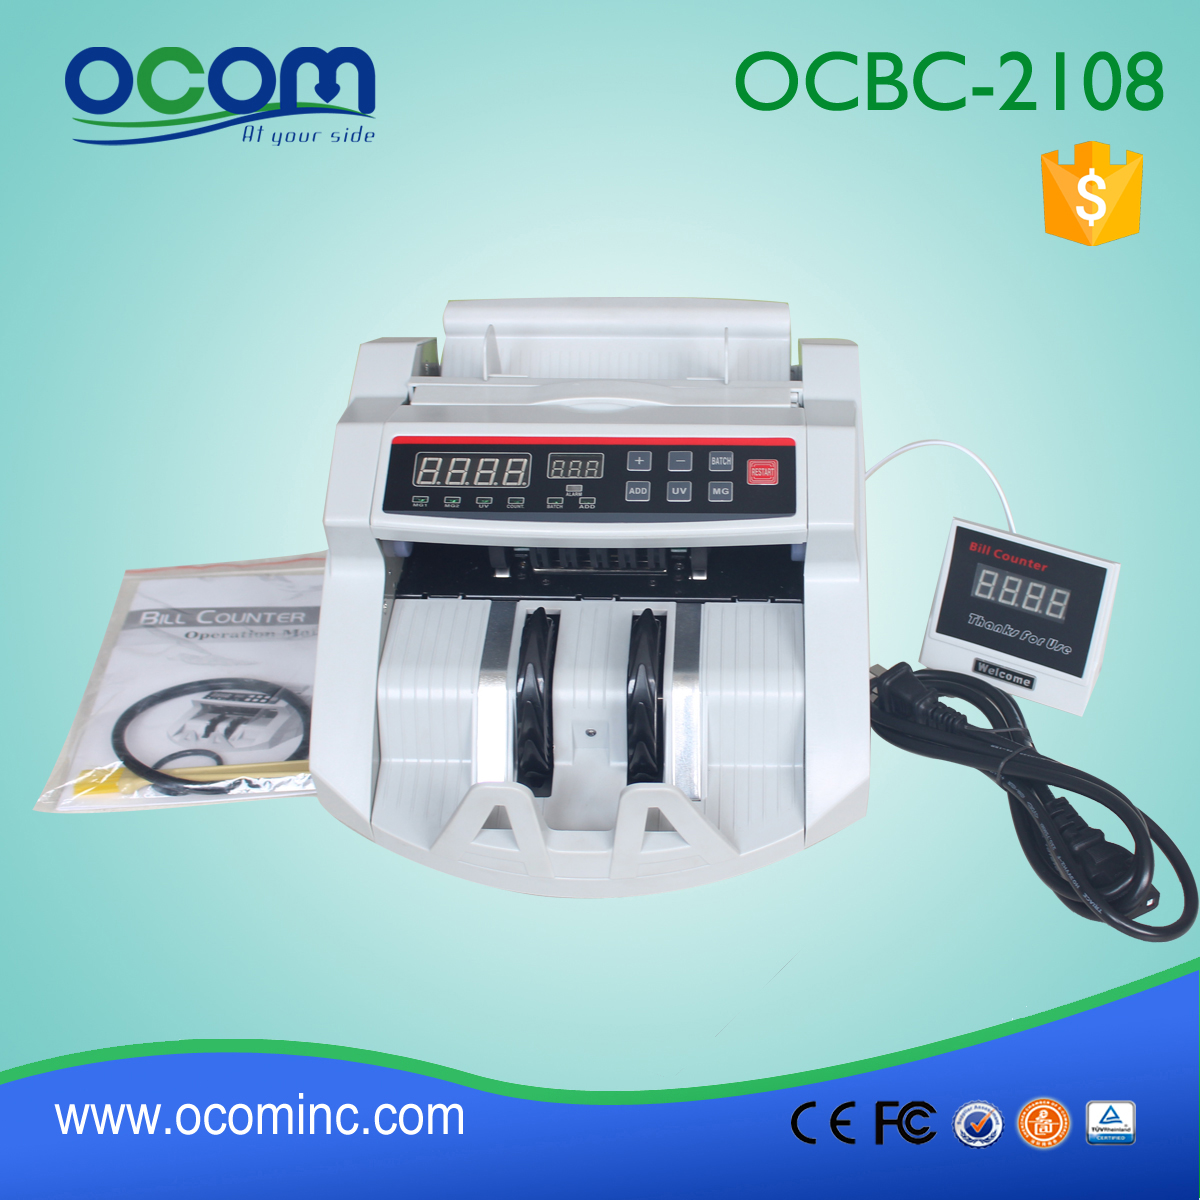 OCBC-2108 goedkoop geld teller made in China